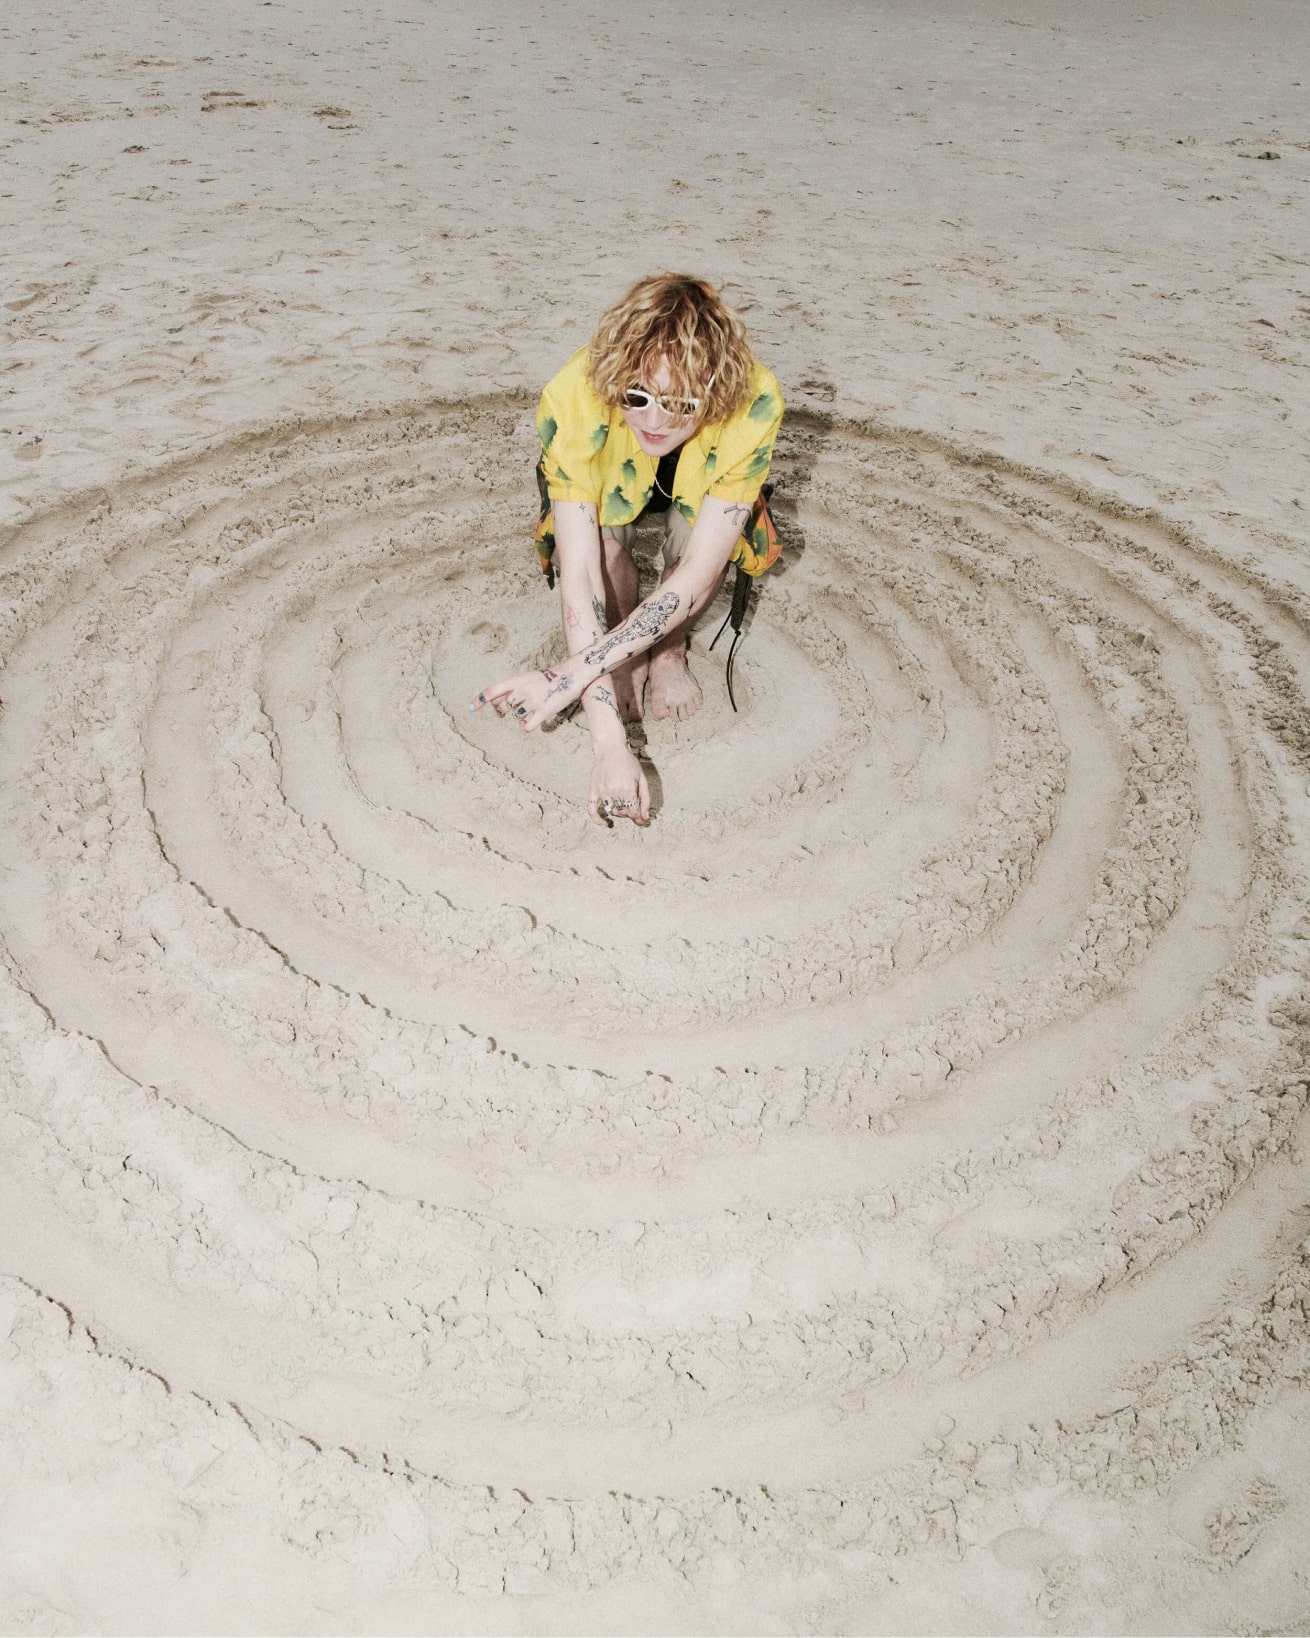 Mann zeichnet große Kreise in den Sand.